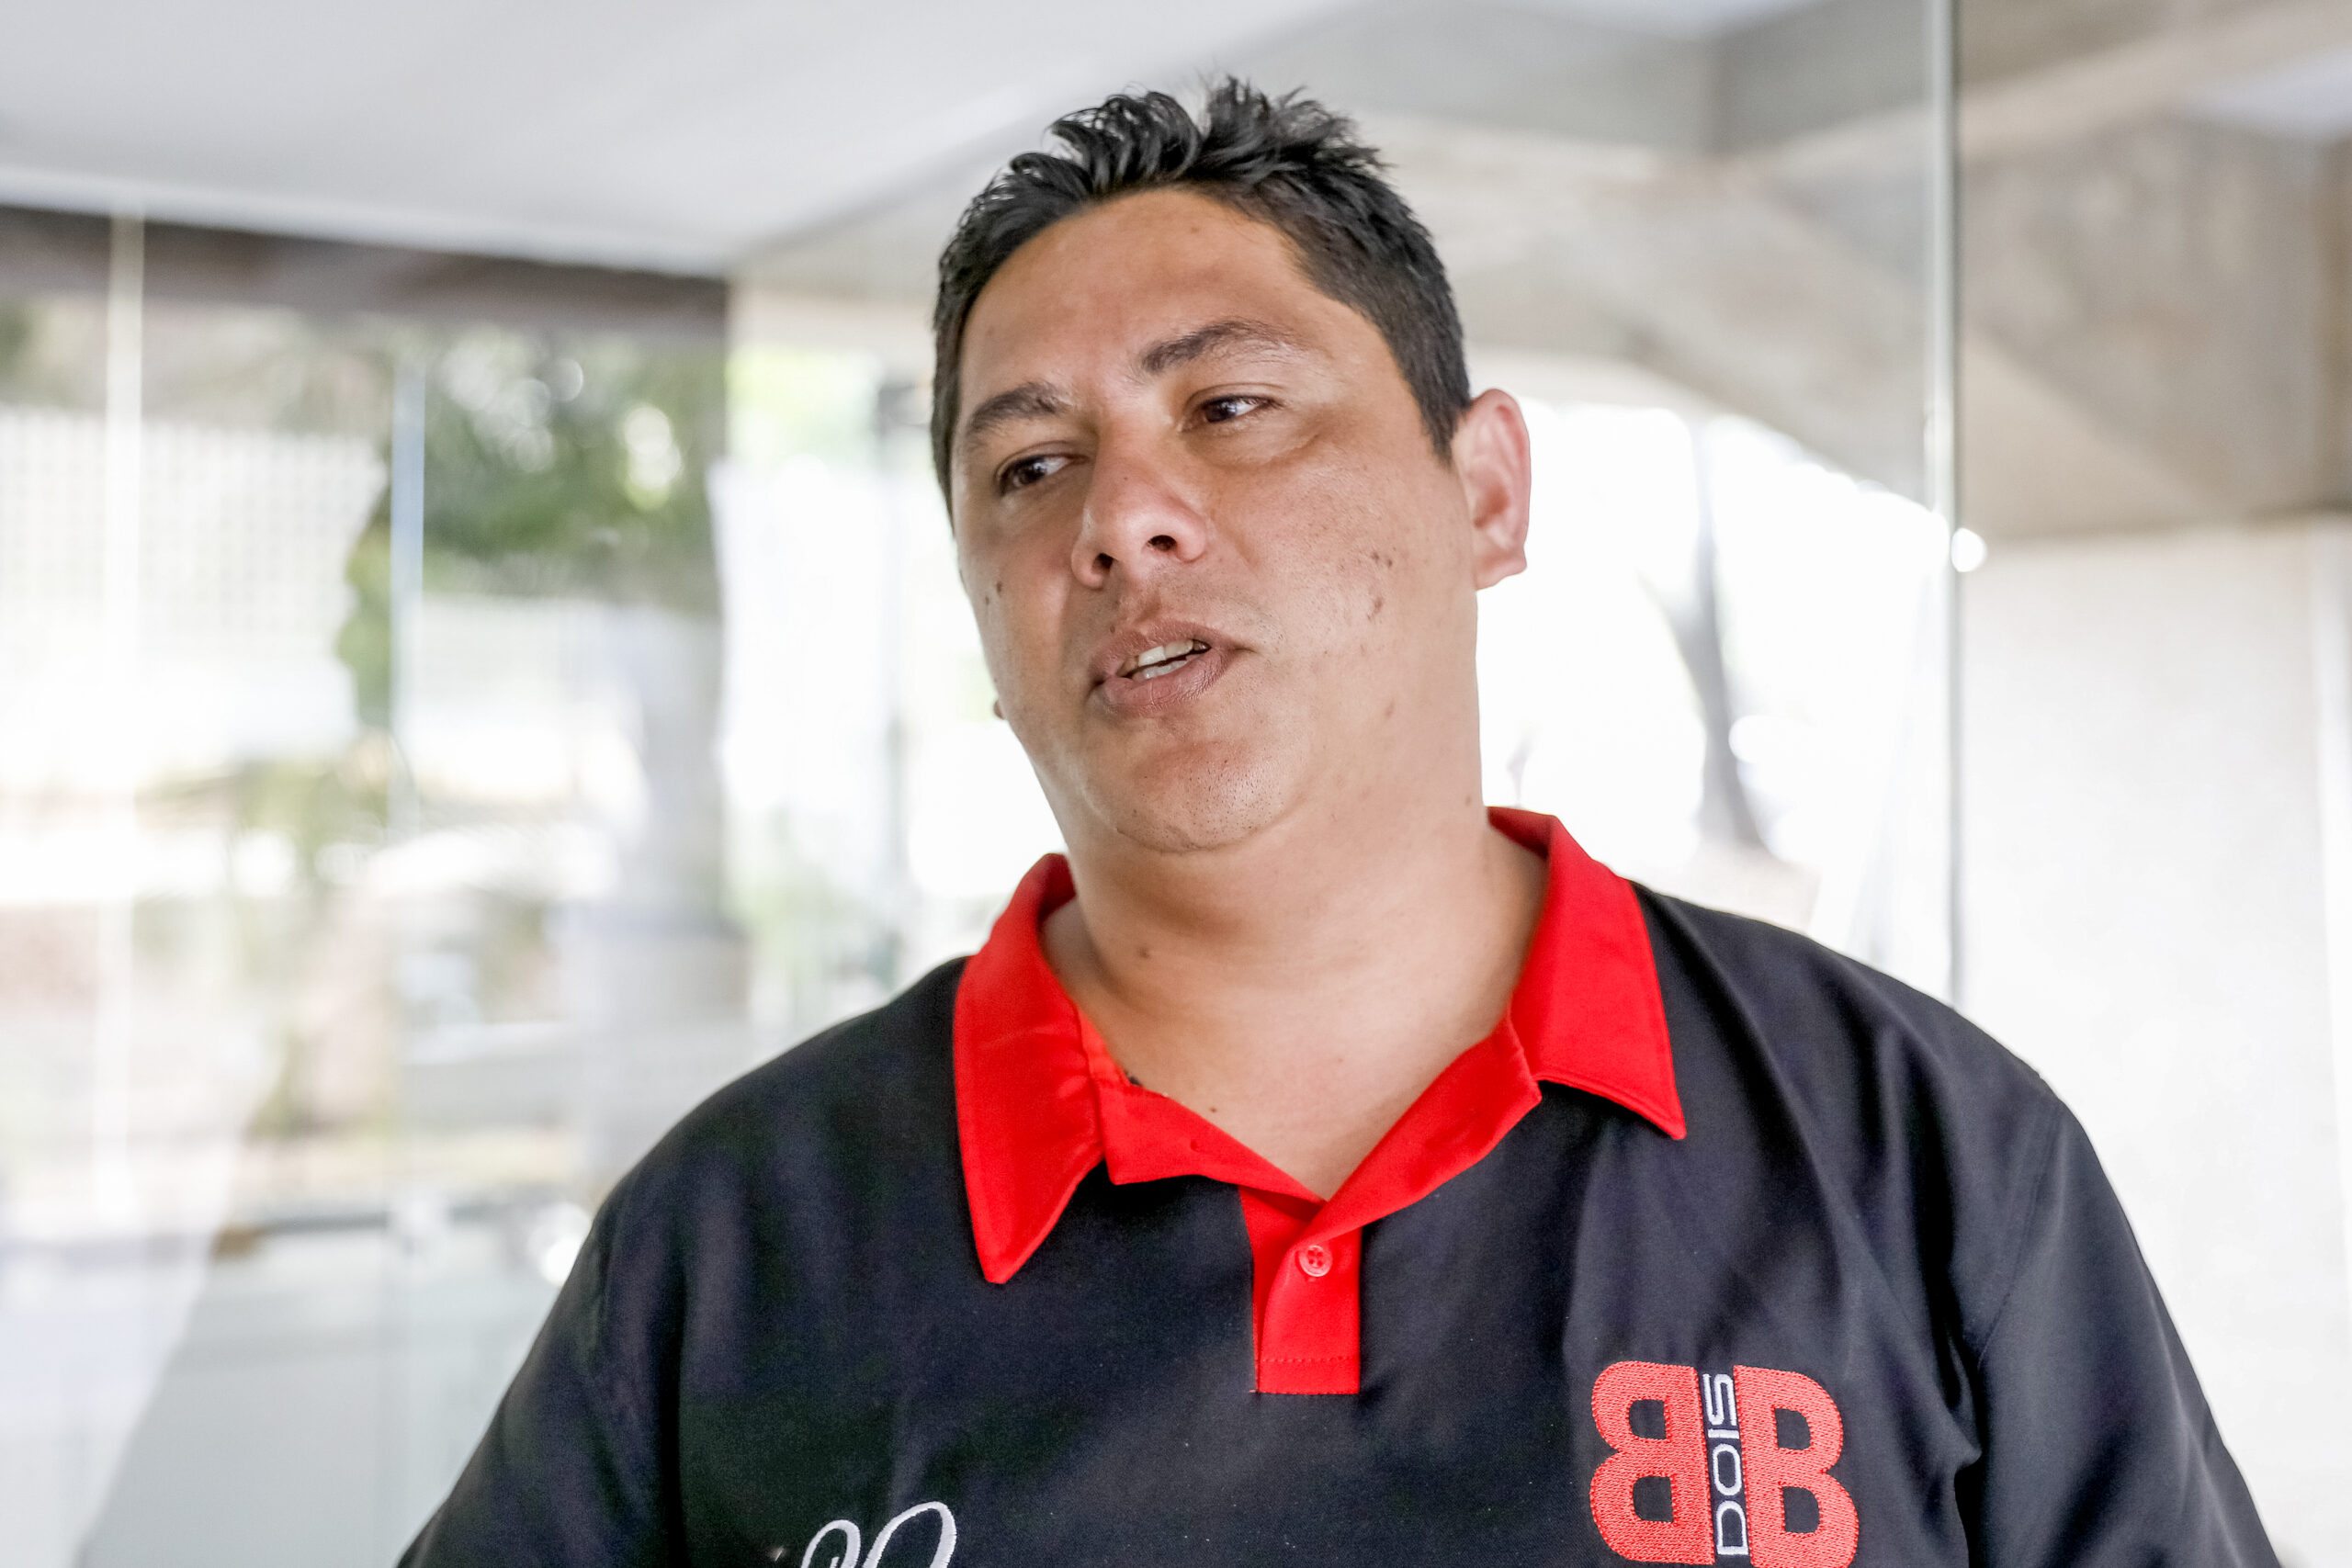 Josenes Santos, porteiro de um prédio de frente para o Eixo L na 204 Norte:  “A pista fica muito lisa e escorregadia com a queda dos frutos, o que gera muitos acidentes”